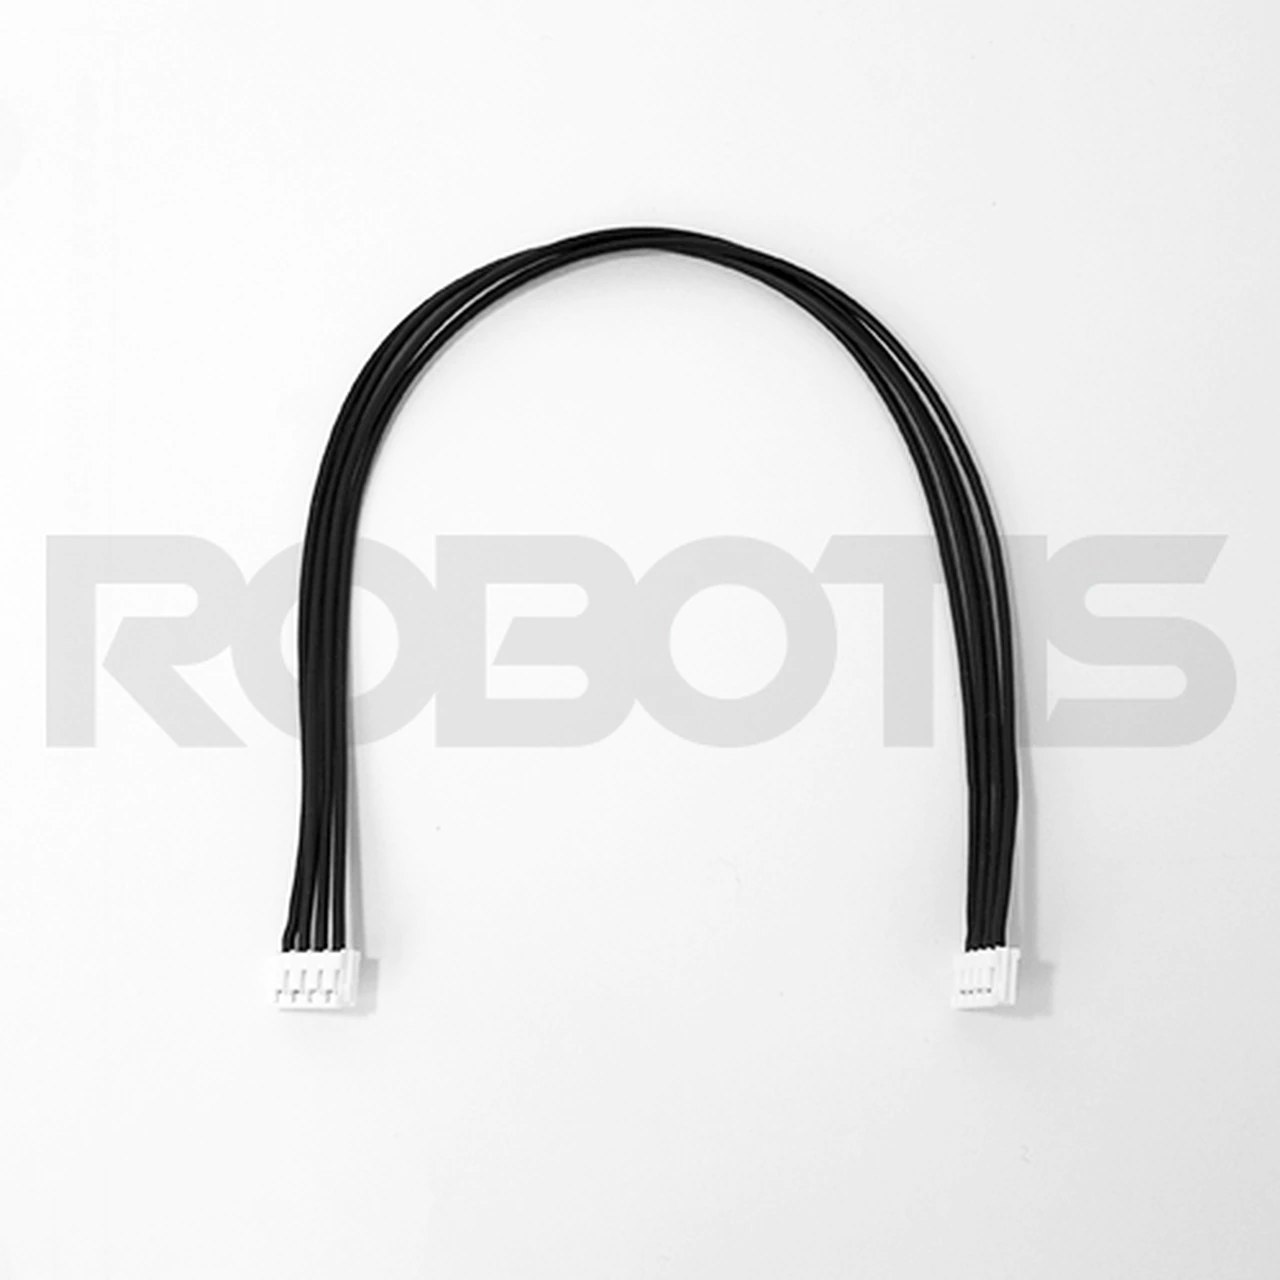 Robot_Cable-X4P_240mm__82872.1464715557.webp (36.7 kB)